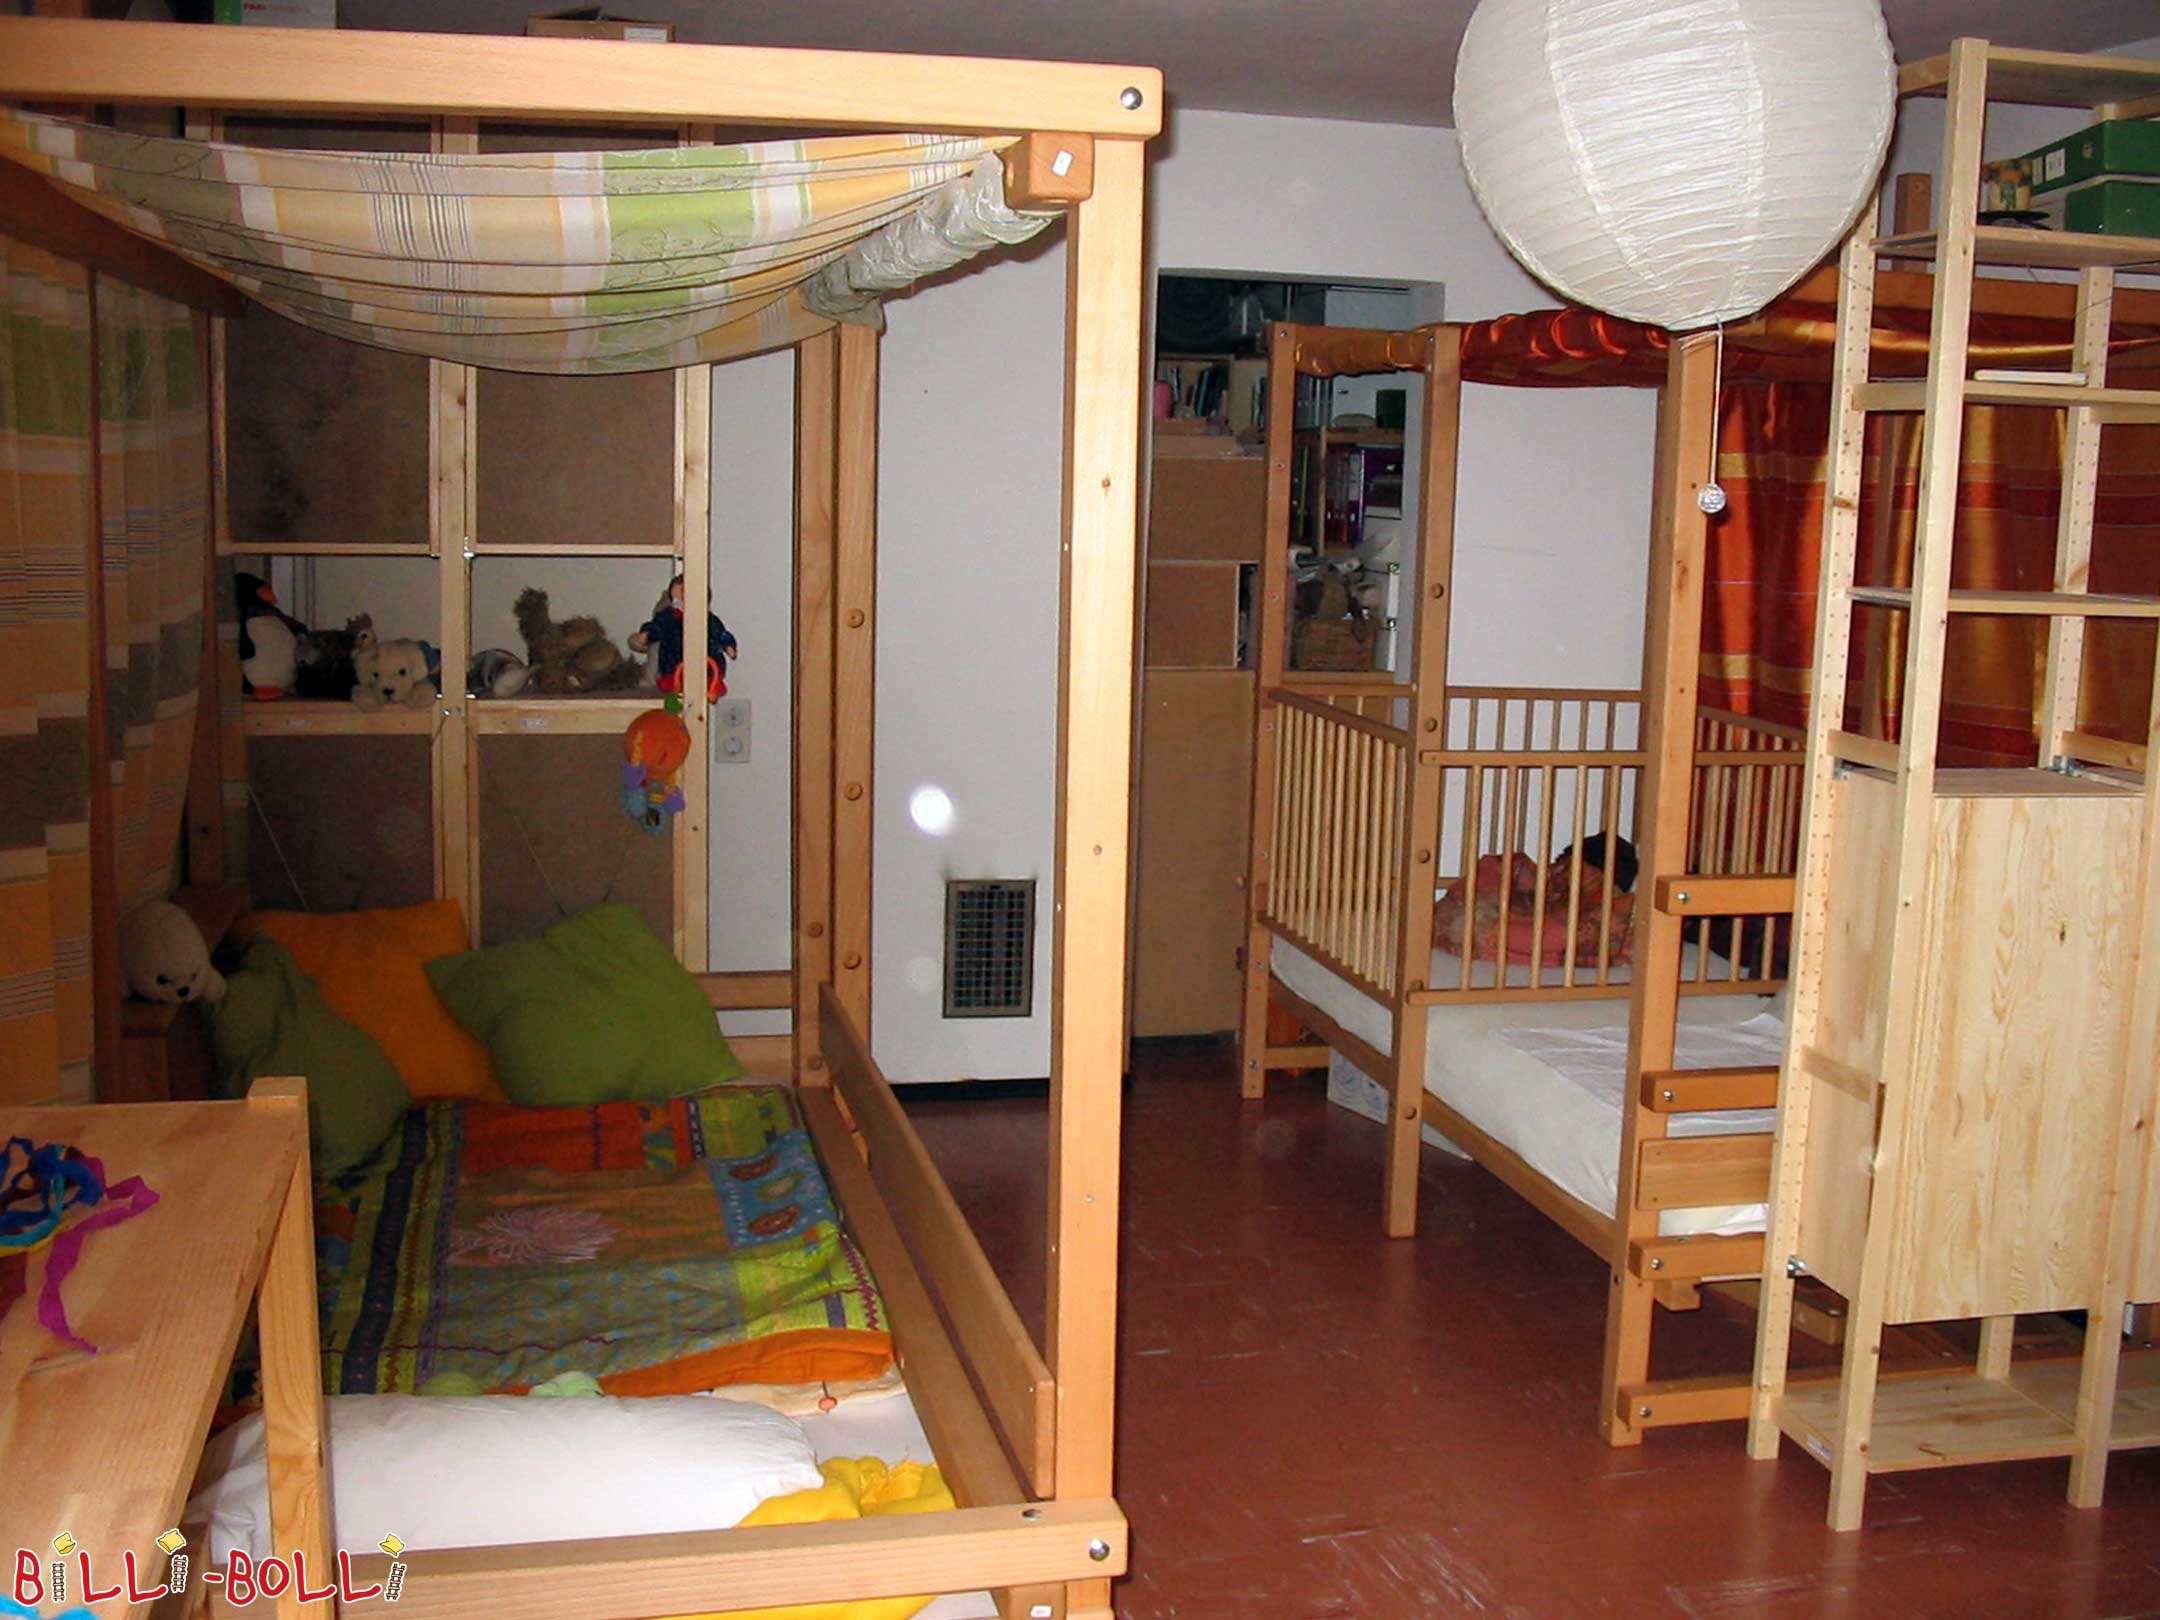 Kaks pööninguvoodit, mis kasvavad koos lapsega kõrgusel 2, mis on üles … (Loft-voodi kasvab koos lapsega)